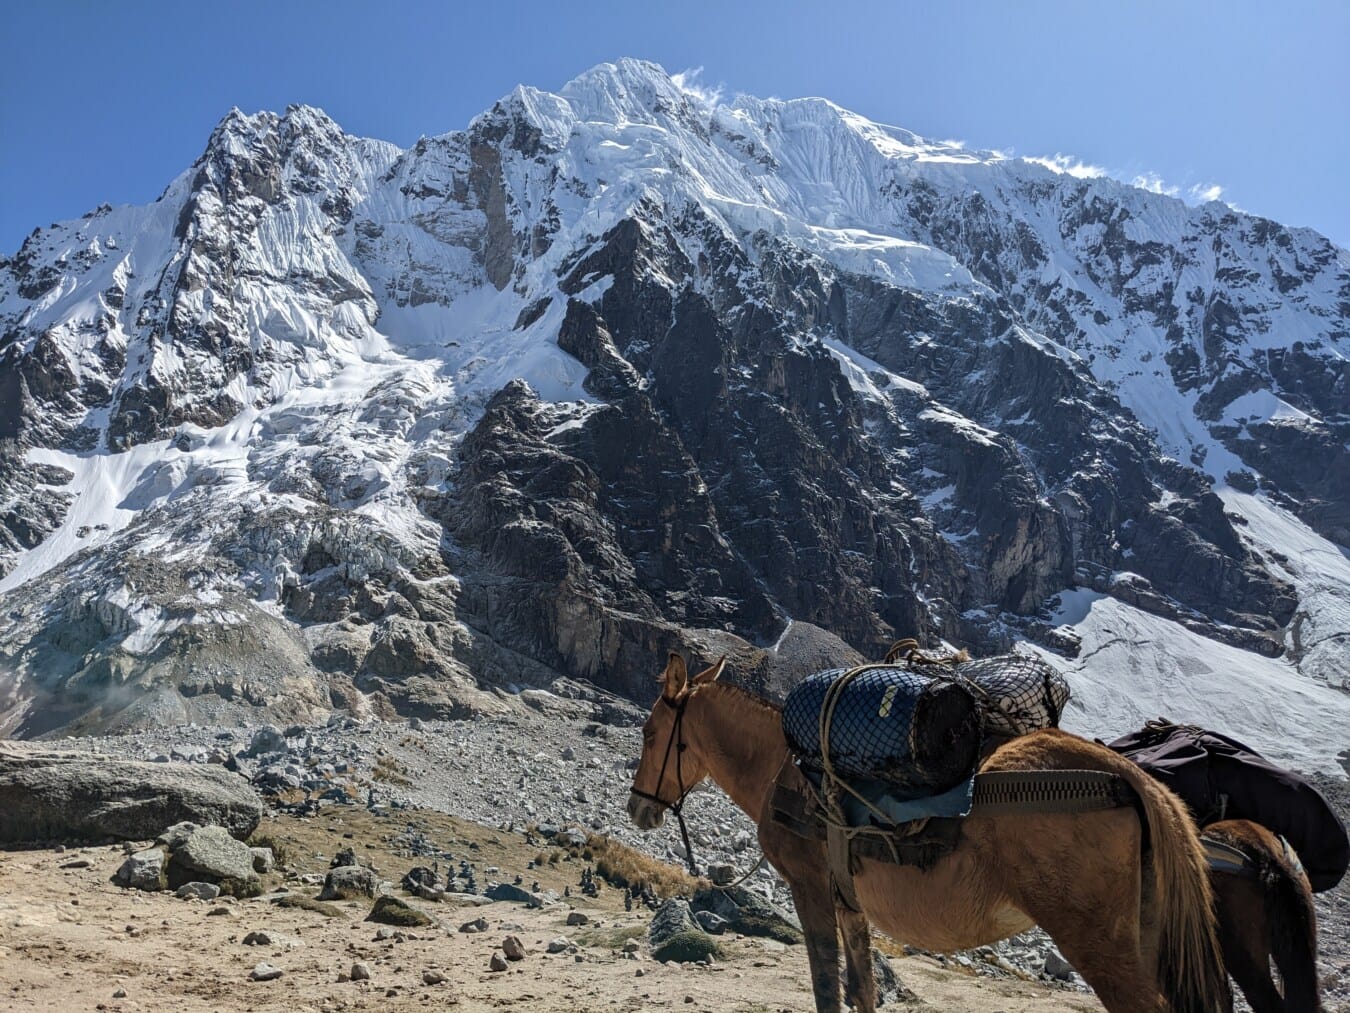 konj, nositi, prtljag, planinski vrh, istraživanje, ekspedicija, vrh, planine, krajolik, planine